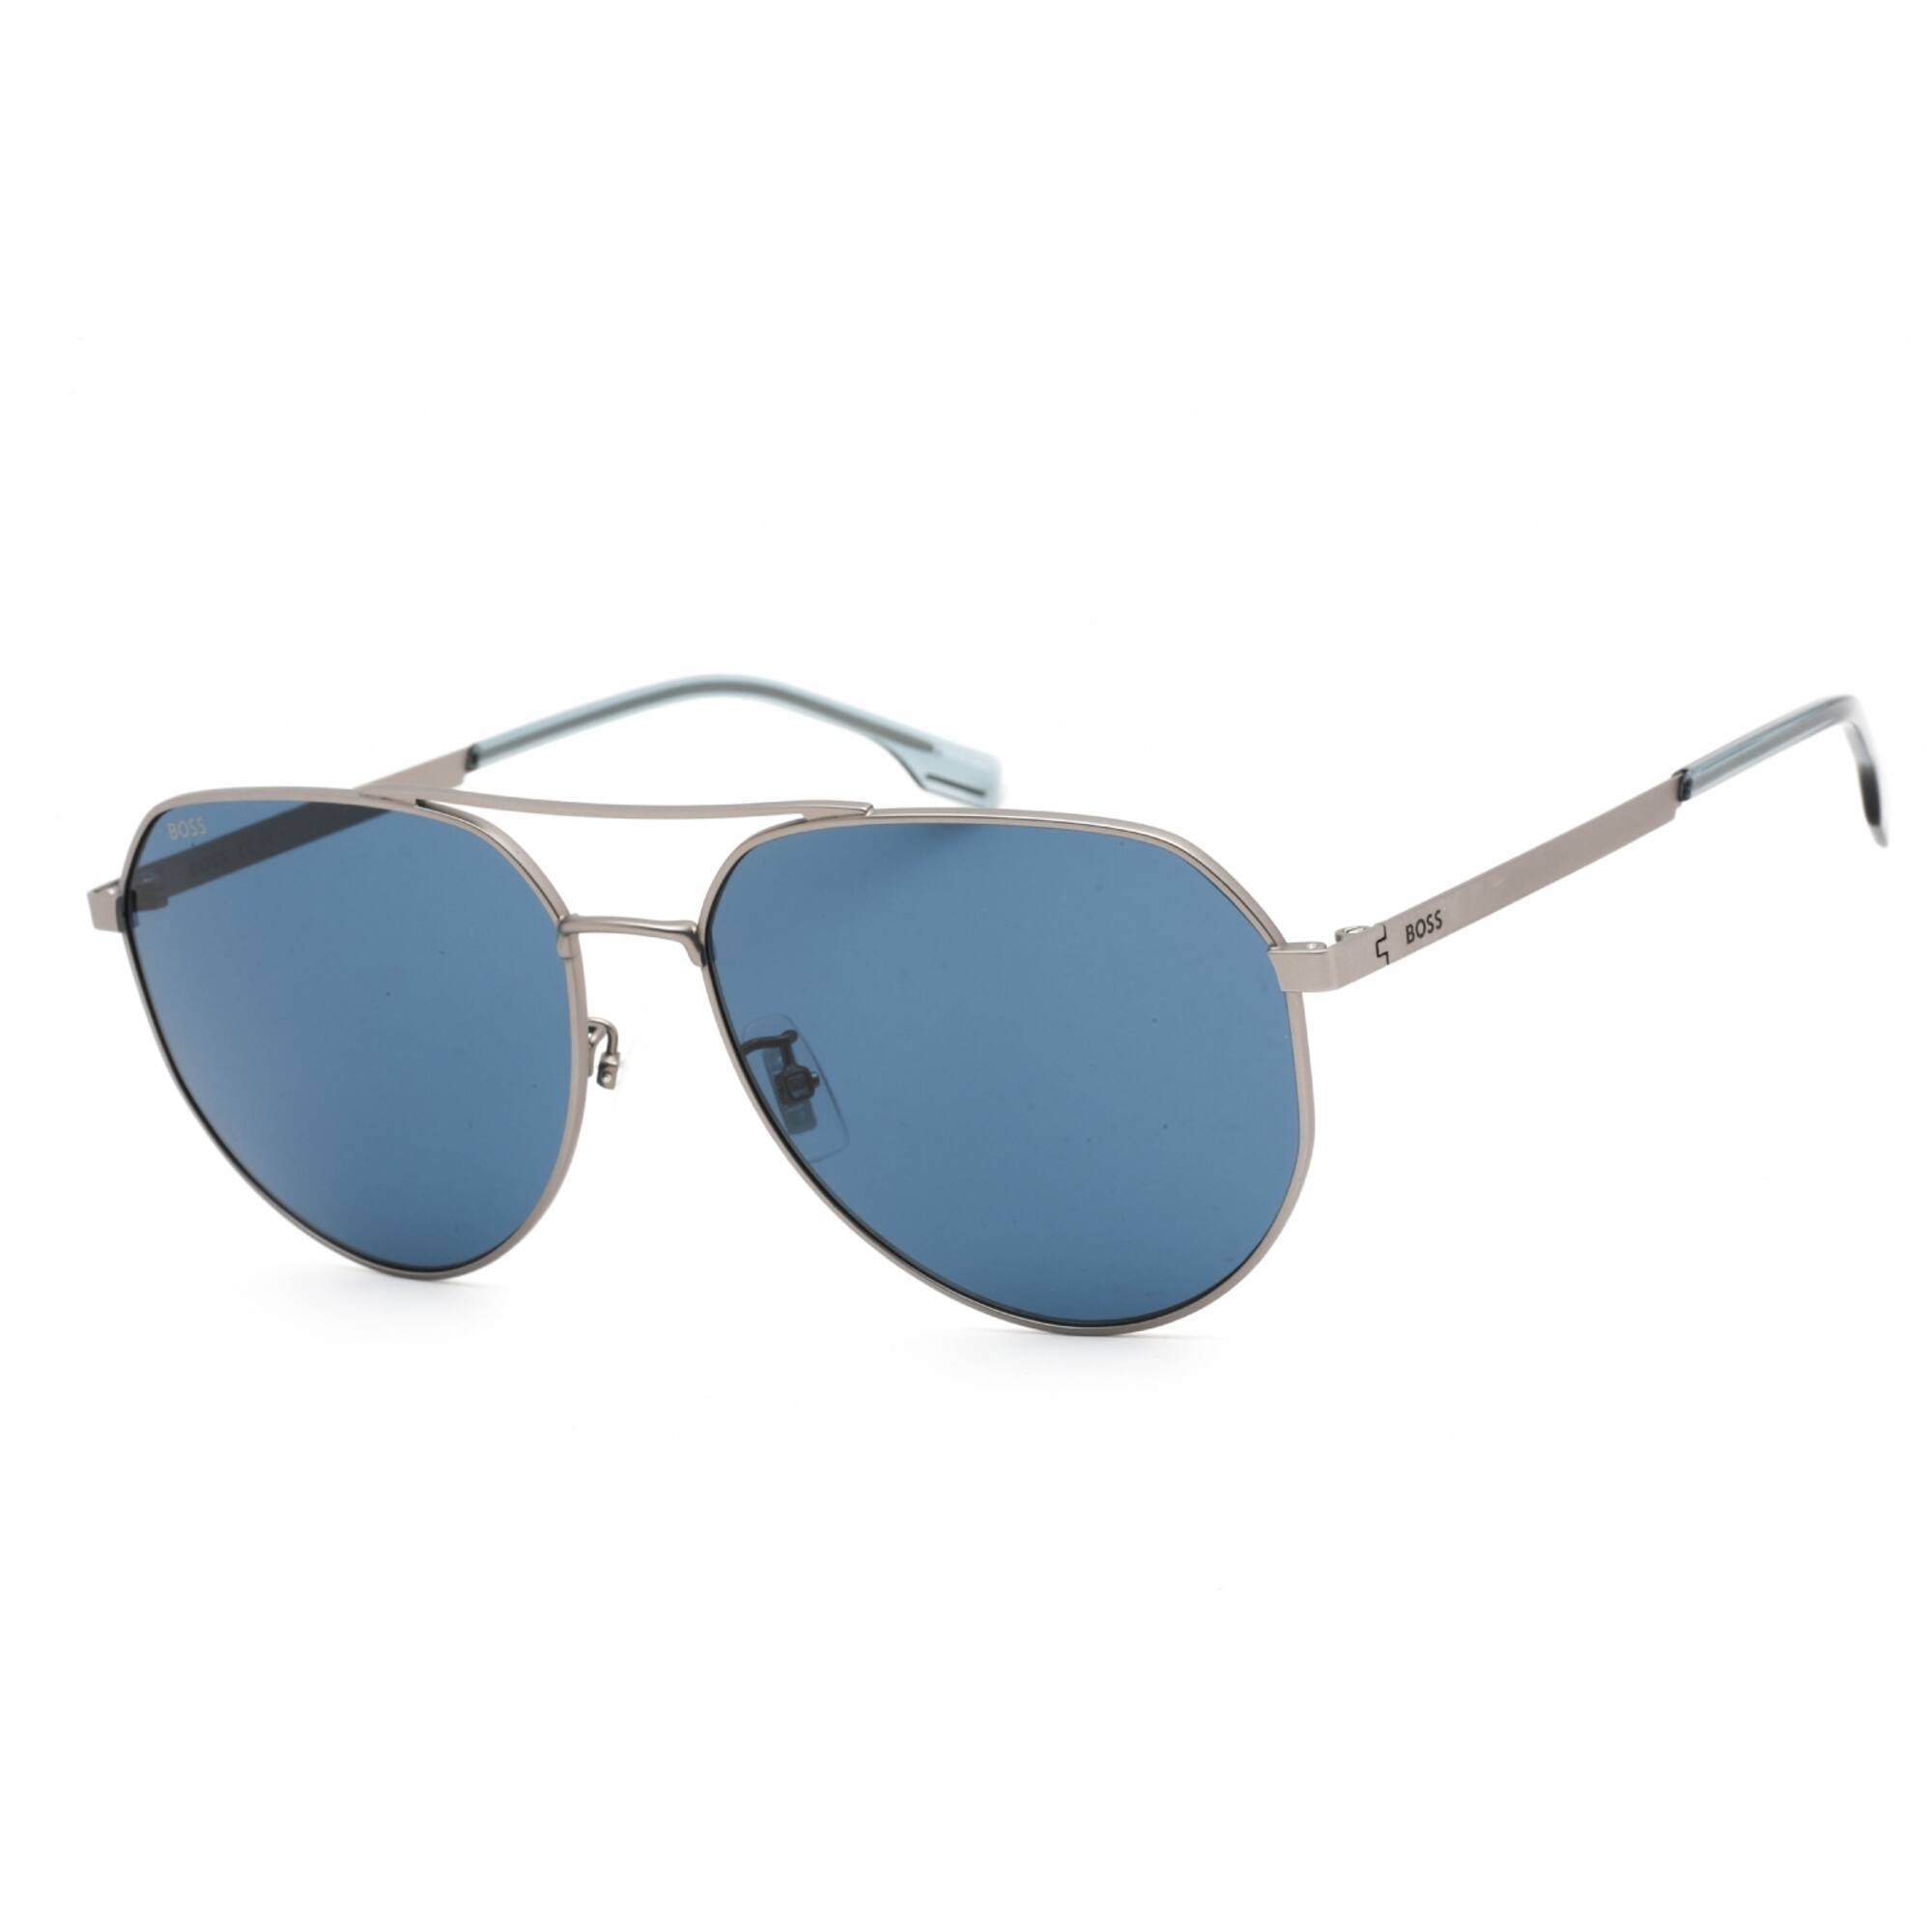 Hugo Boss Men's Sunglasses - Blue Lens Matte Ruthenium Frame | BOSS 14